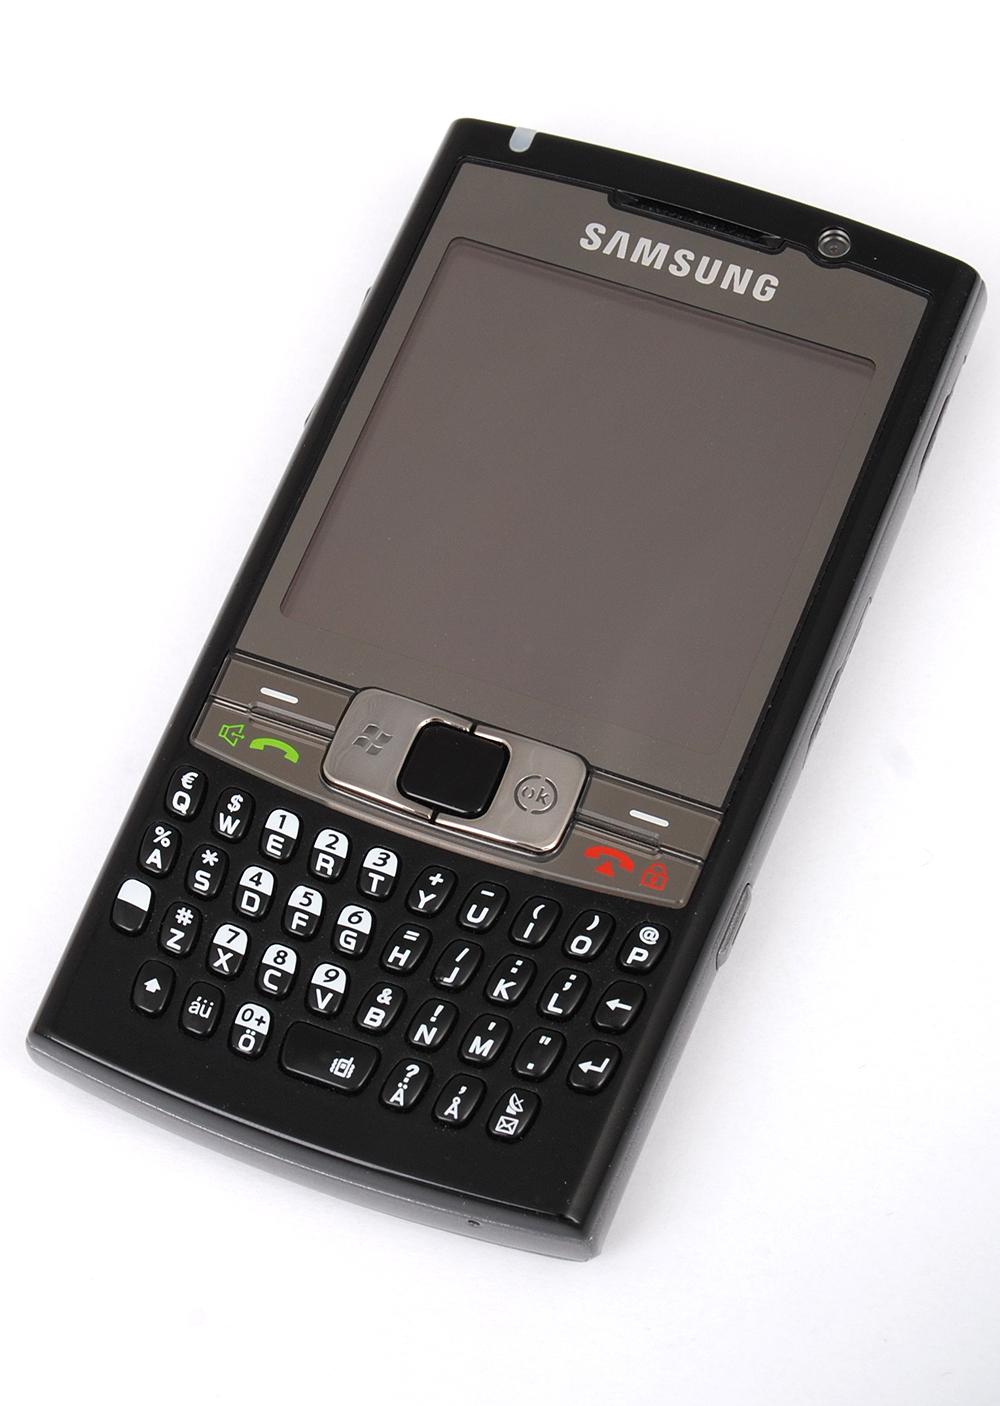 Samsung I780 er en råtass på spesifikasjoner. Her får du fullt tastatur, trykkskjerm og alle trådløse teknologier.